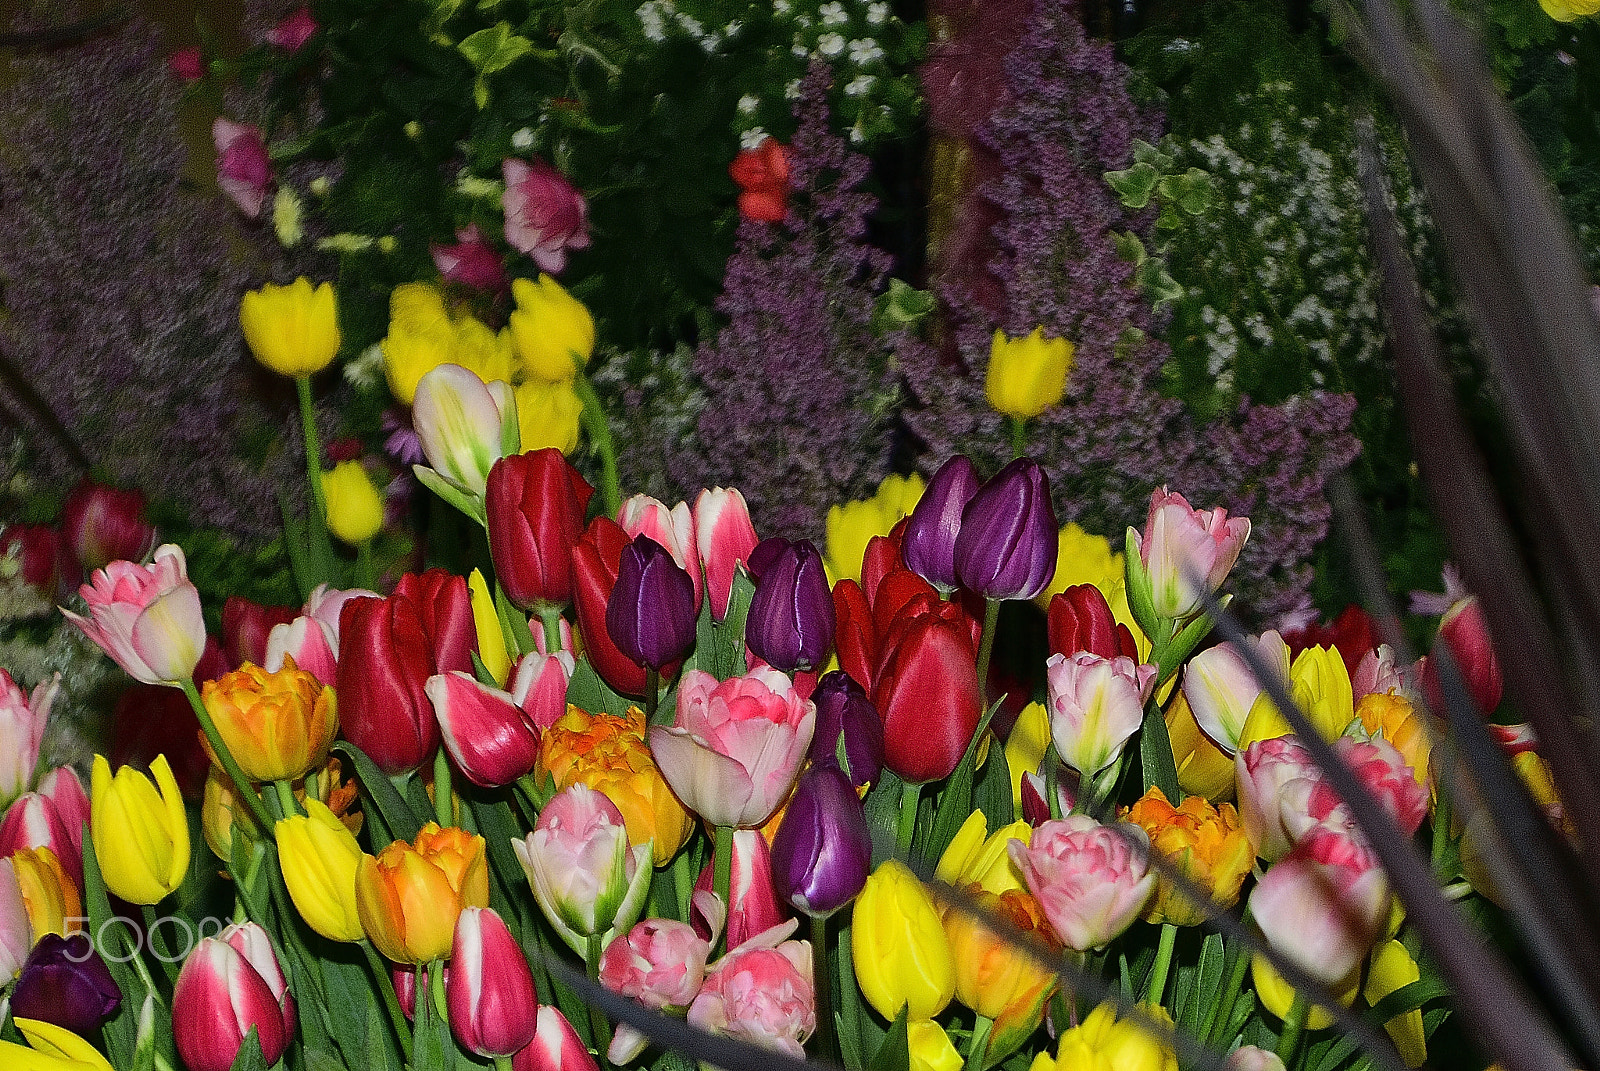 Nikon D200 sample photo. Flower arrangements, tulip us. photography